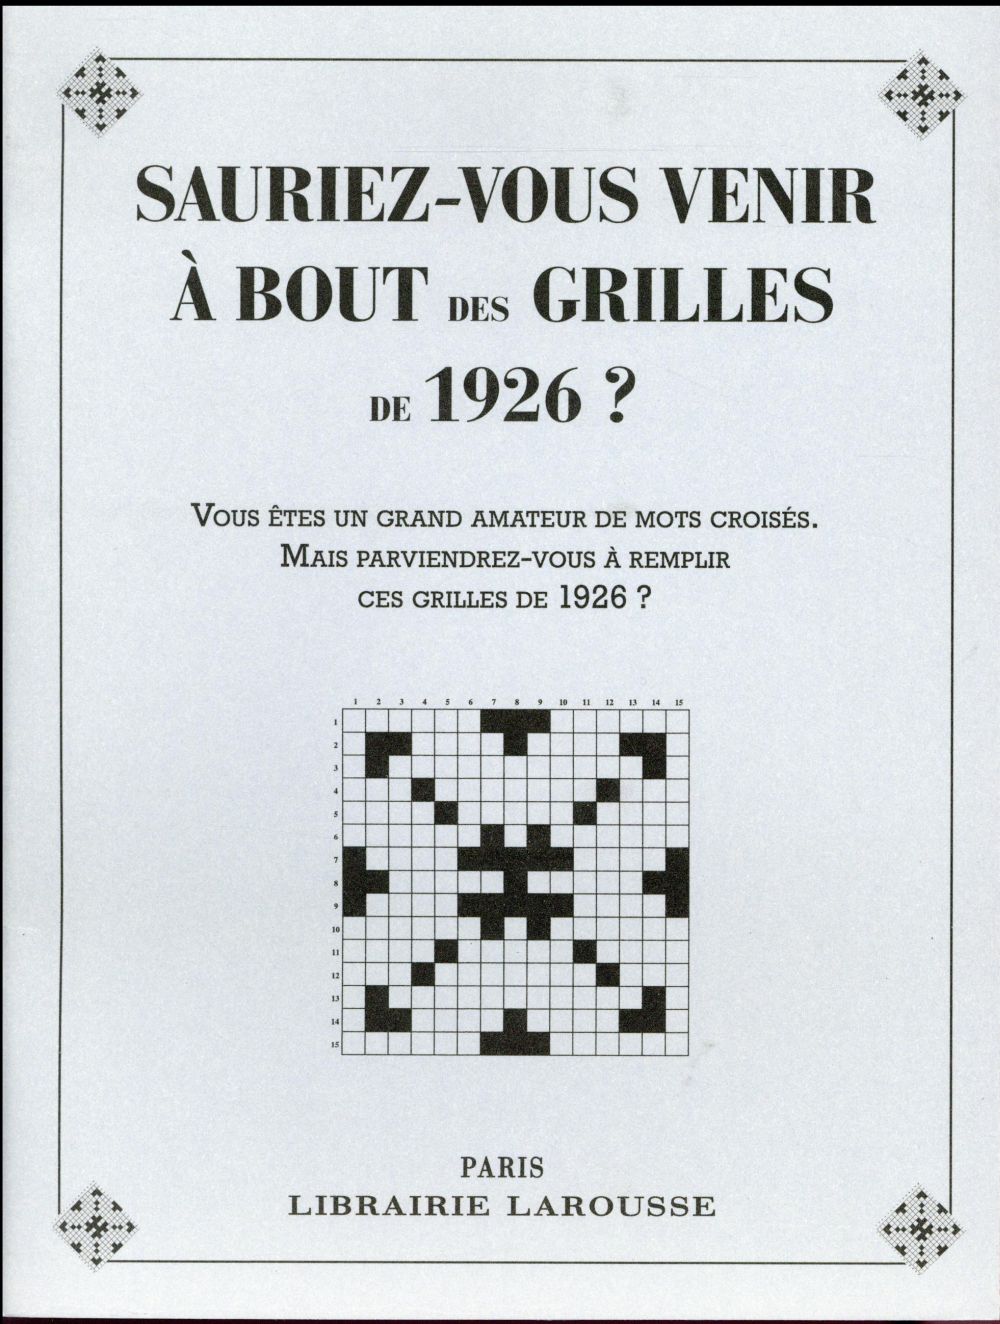 SAURIEZ-VOUS VENIR A BOUT DES GRILLES DE 1926 ?